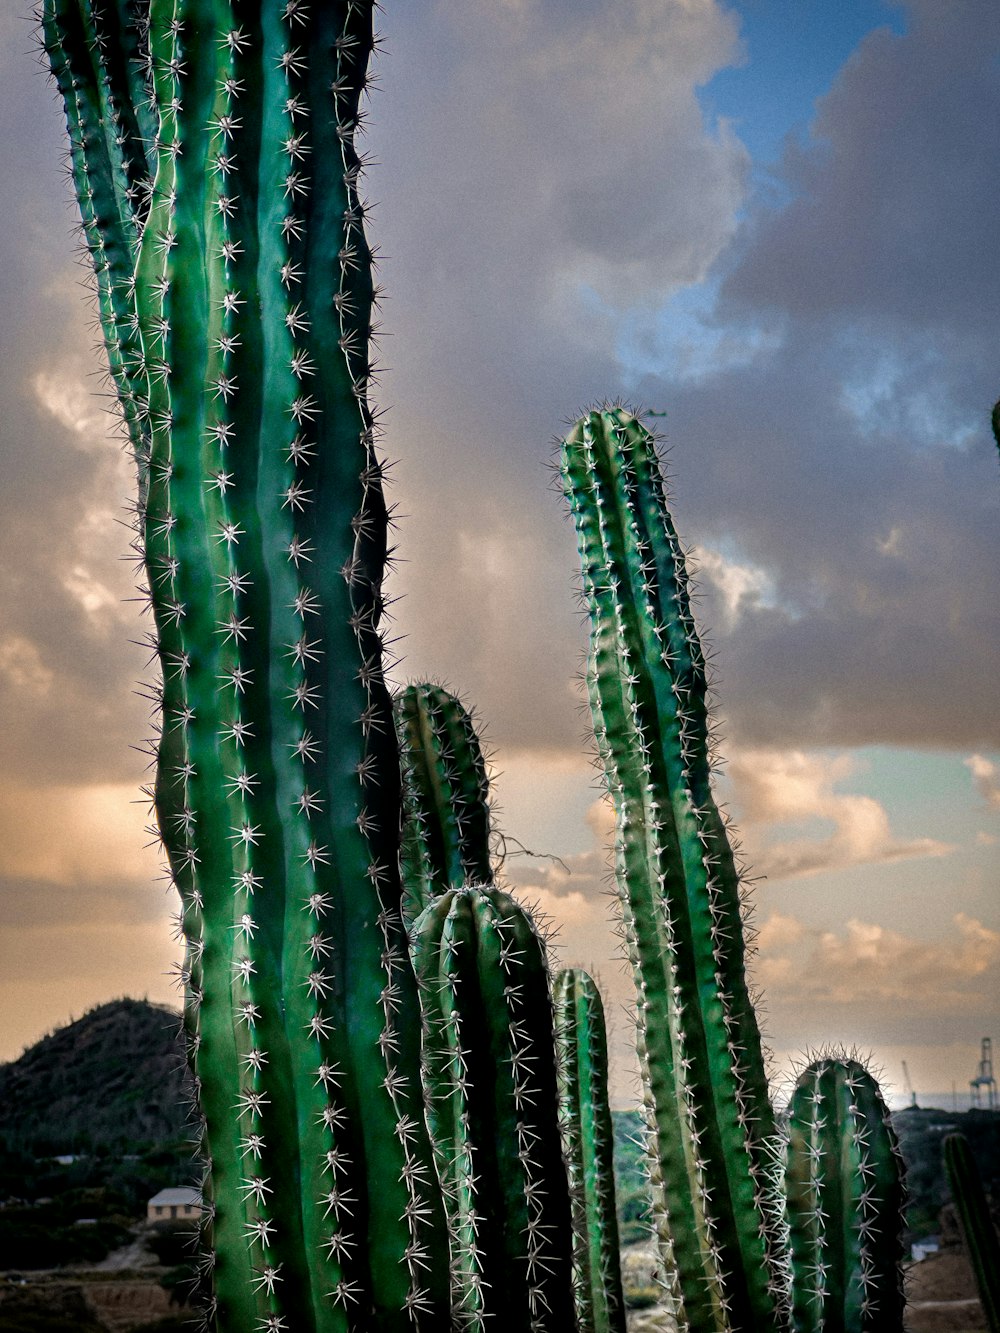 Ein großer grüner Kaktus mit einem bewölkten Himmel im Hintergrund